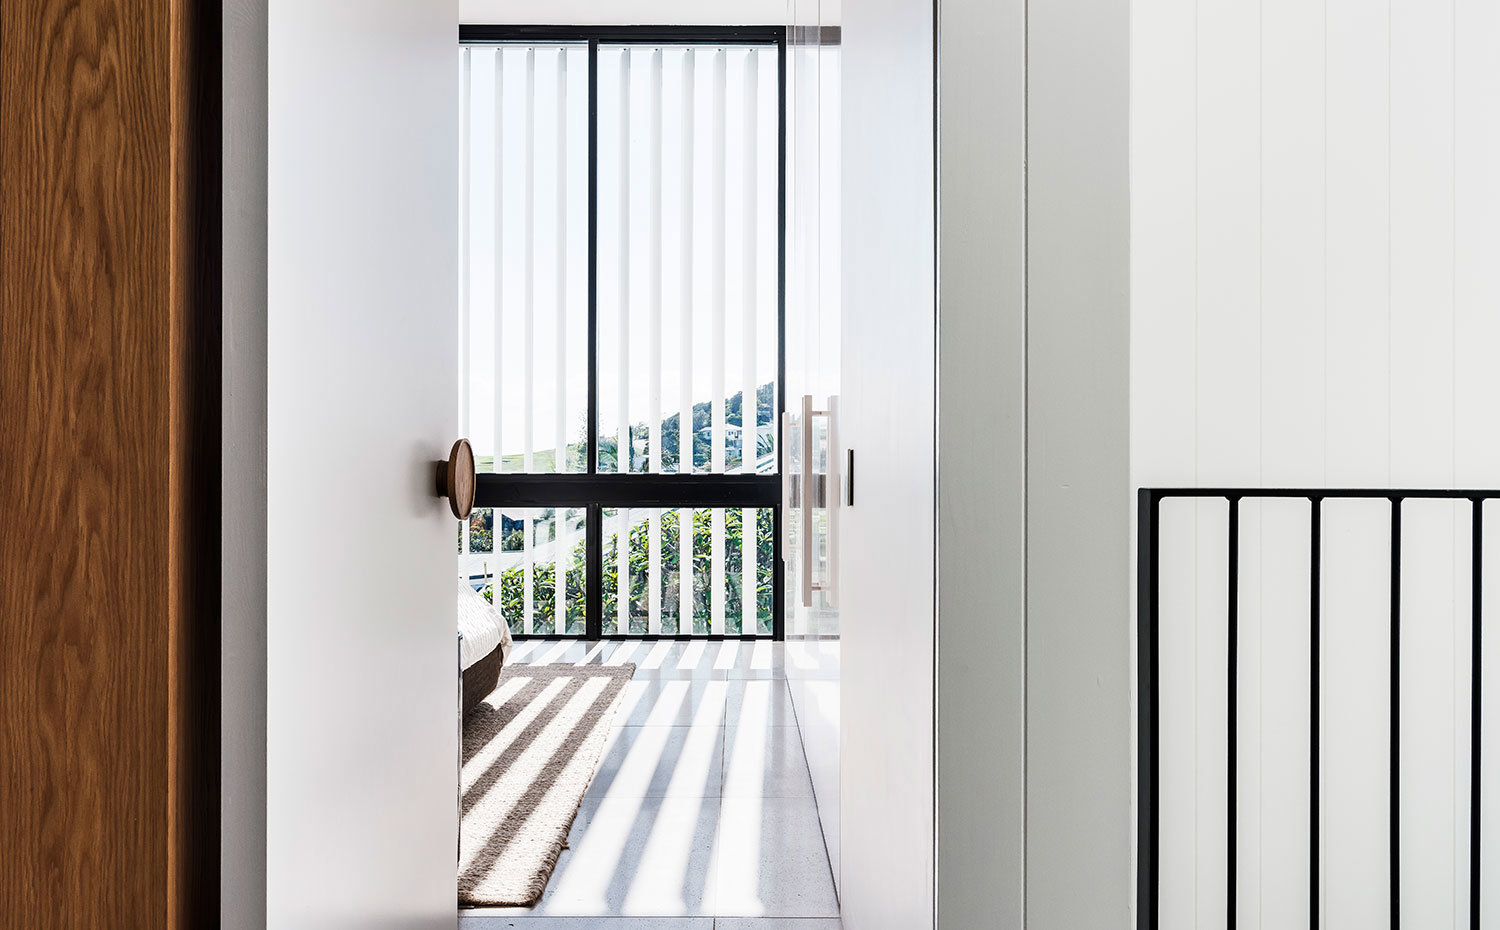 Puerta de acceso a dormitorio con tirador en contraste con puerta en blanco, estor vertical para controlar la entrada de luz